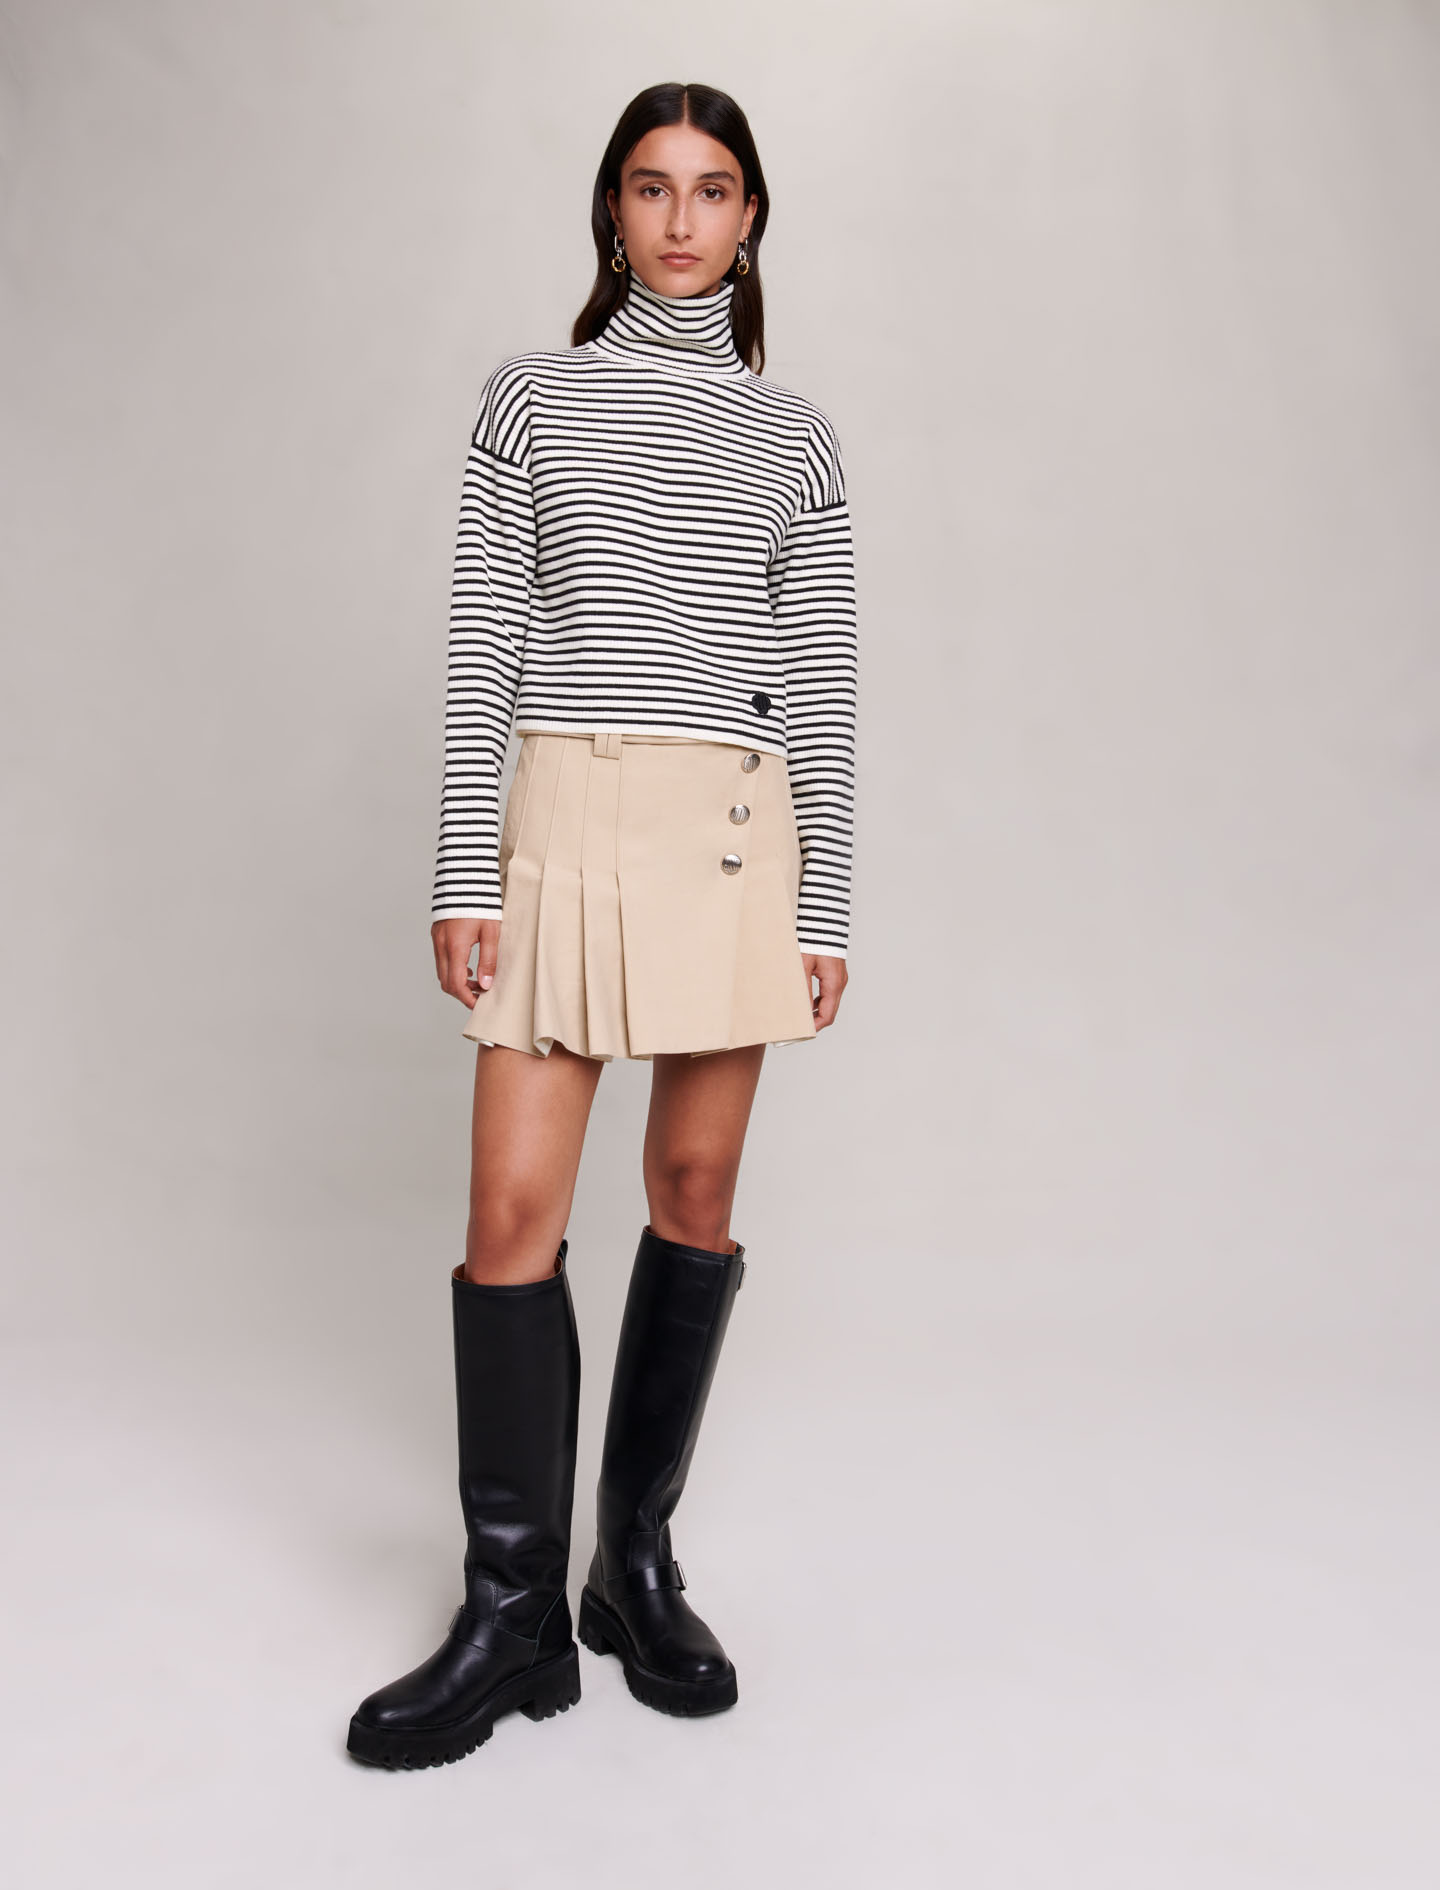 Maje Woman's cotton, Striped jumper for Fall/Winter, in color Ecru Black /